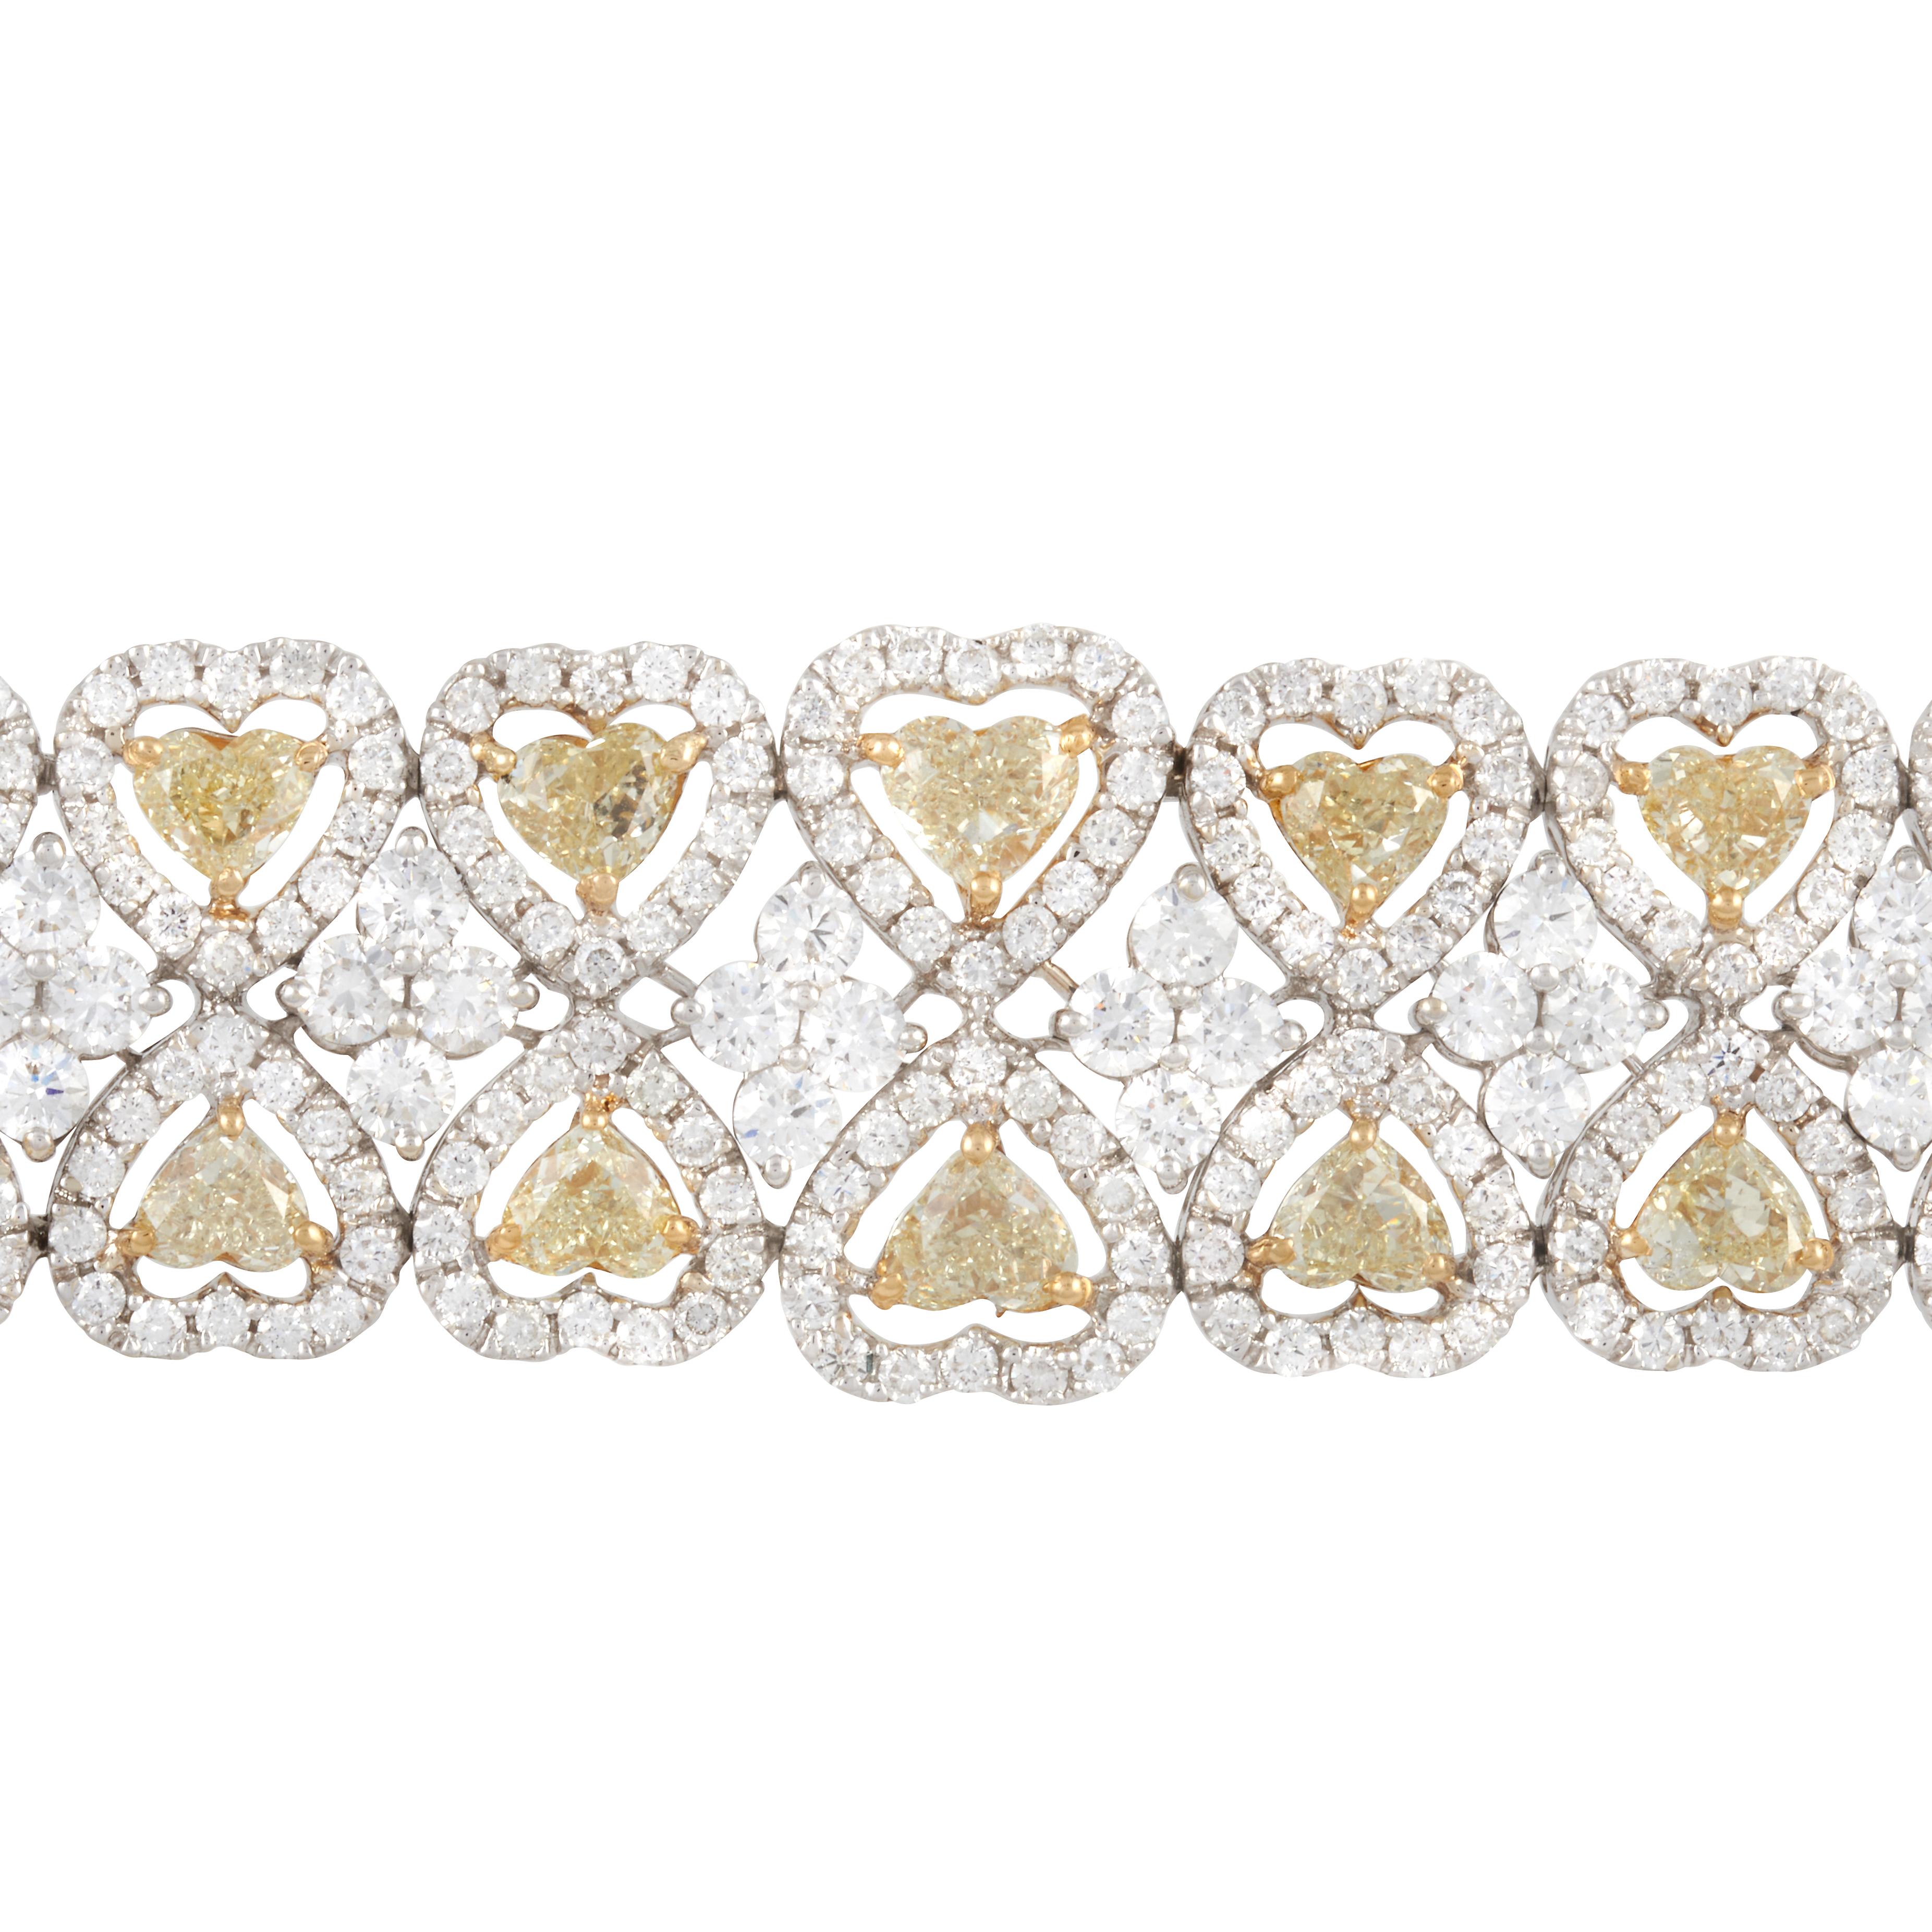 Ein Diamantarmband aus 18 Karat Weiß- und Gelbgold mit zwei Reihen herzförmiger Diamanten mit weißen Diamantenhalos. Es gibt 38 Fancy Yellow Herz Diamanten, die etwa 13,50 Karat mit einem VS Klarheit Gewicht. Es gibt 612 runde weiße Diamanten mit